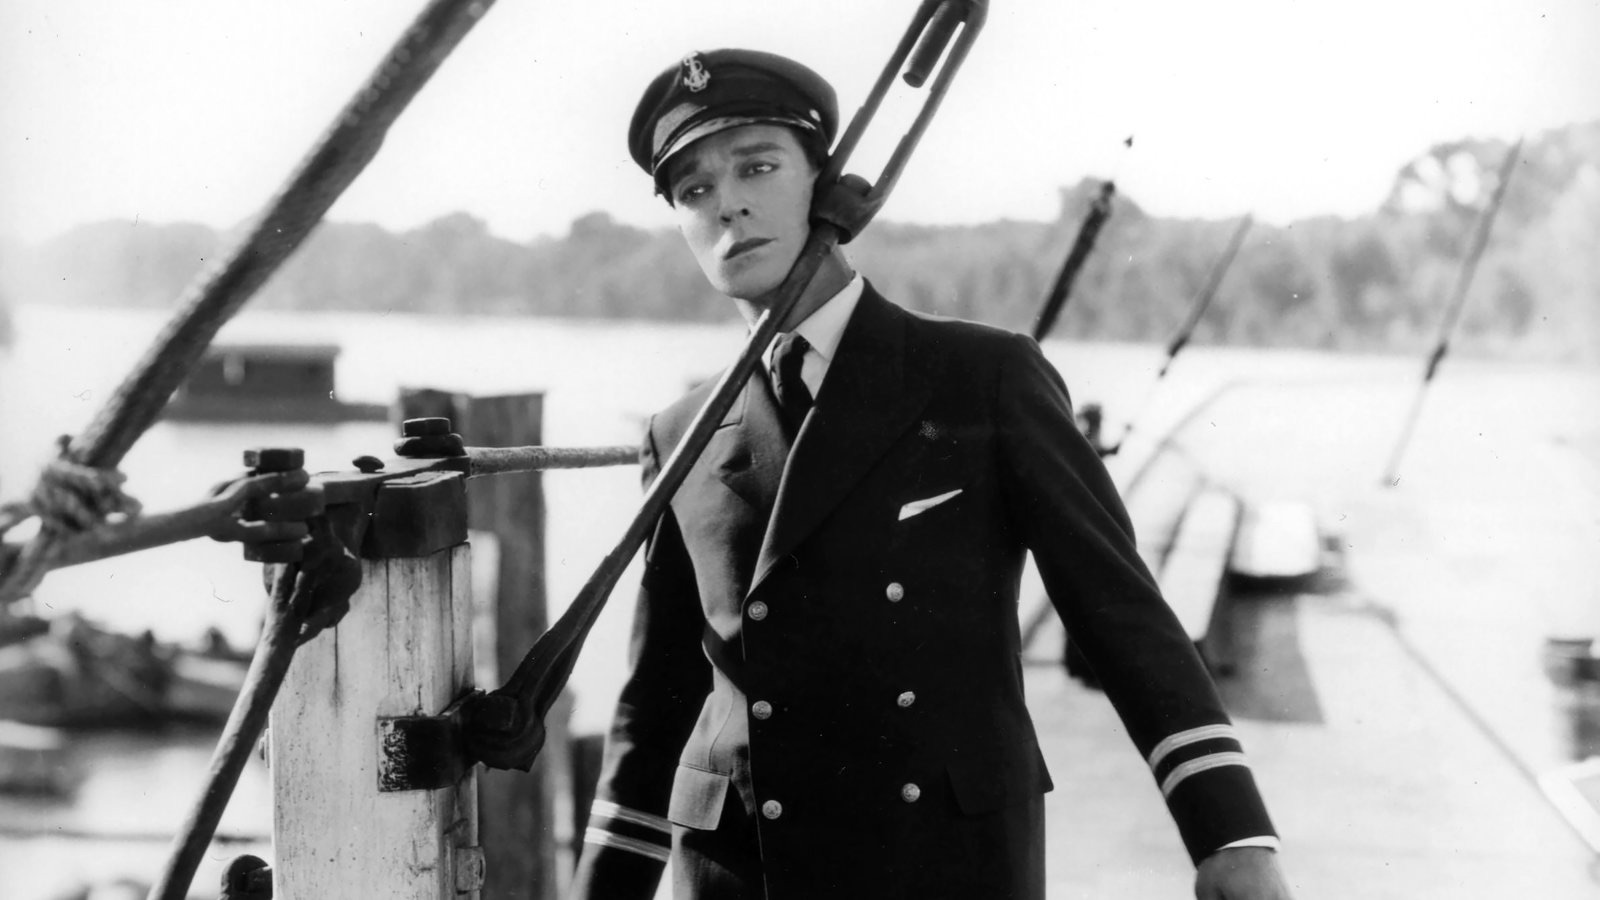 Buster Keaton in Steamboat Bill Jr. (1928)